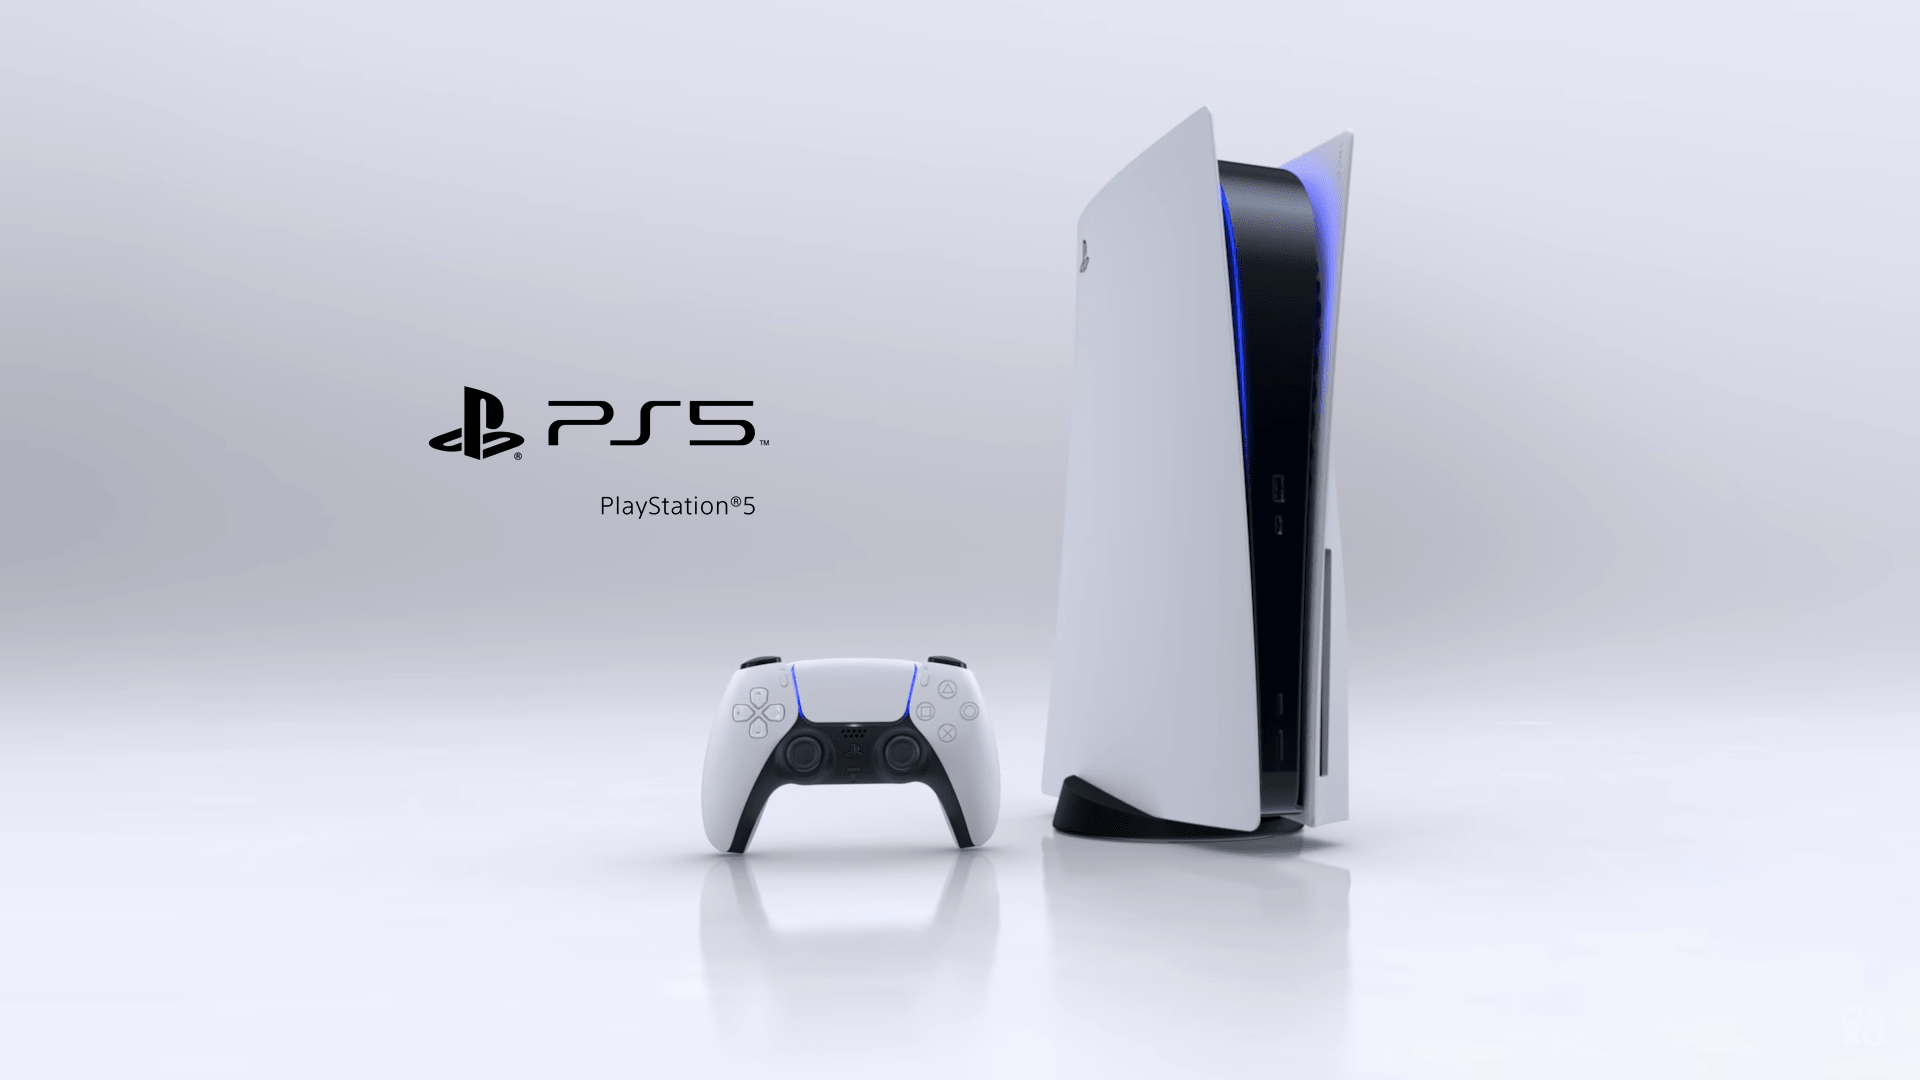 Báo cáo cho biết Sony sẽ sản xuất thêm hàng triệu máy PS5 để đáp ứng yêu cầu trong mùa dịch Covid-19